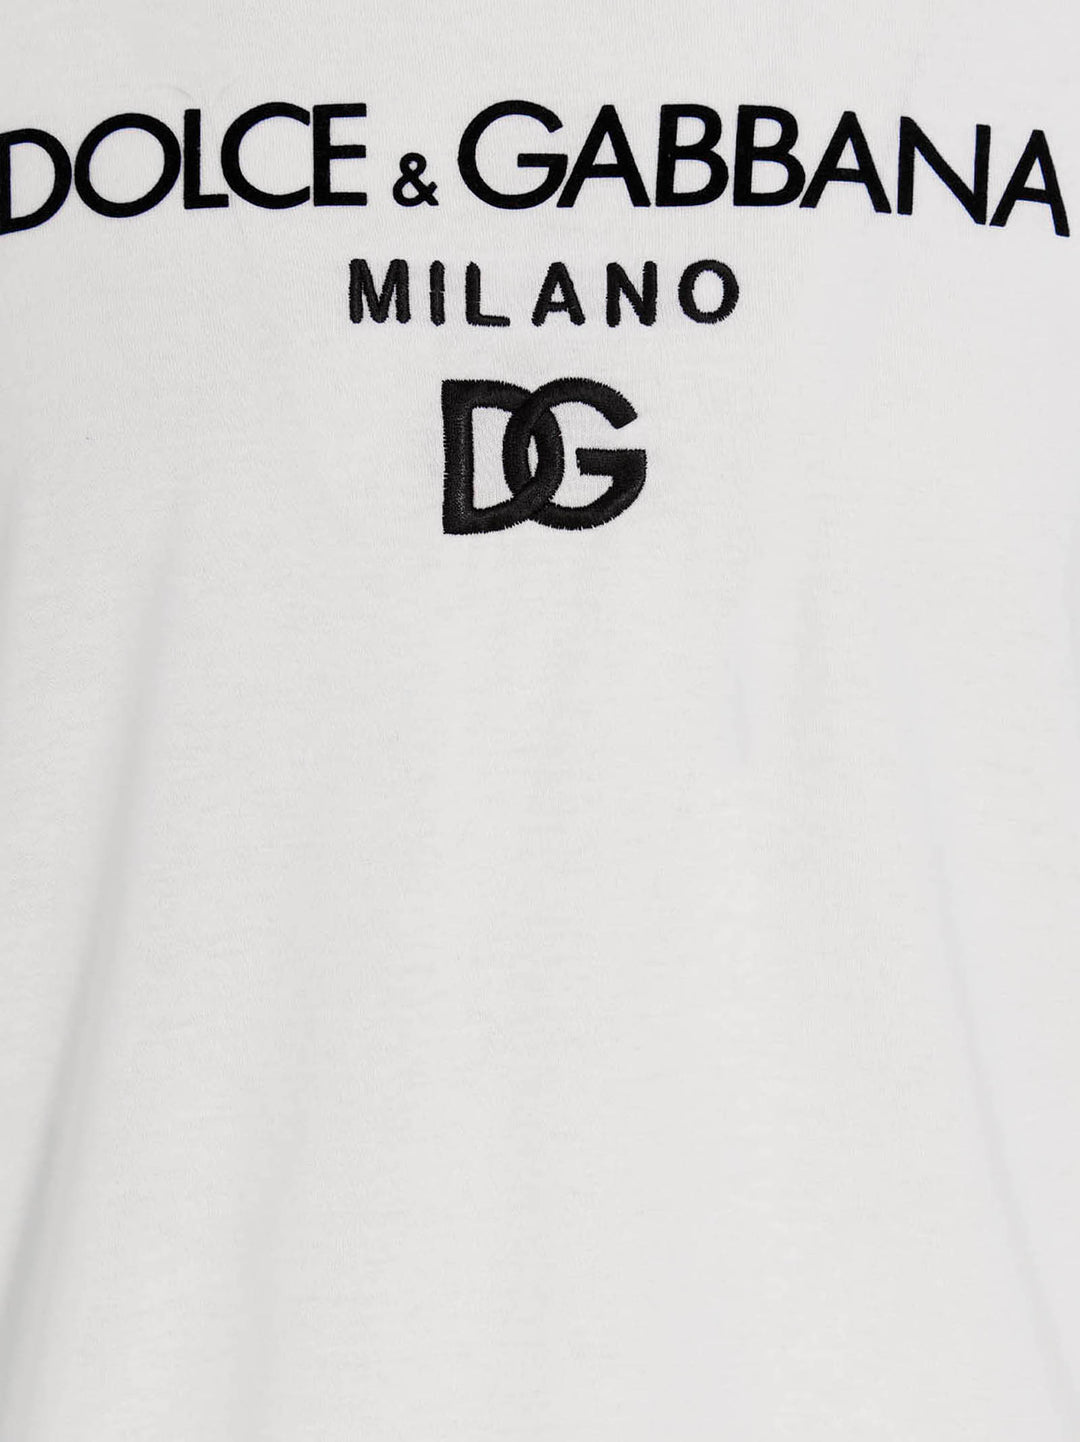 Dg Essential T Shirt Bianco